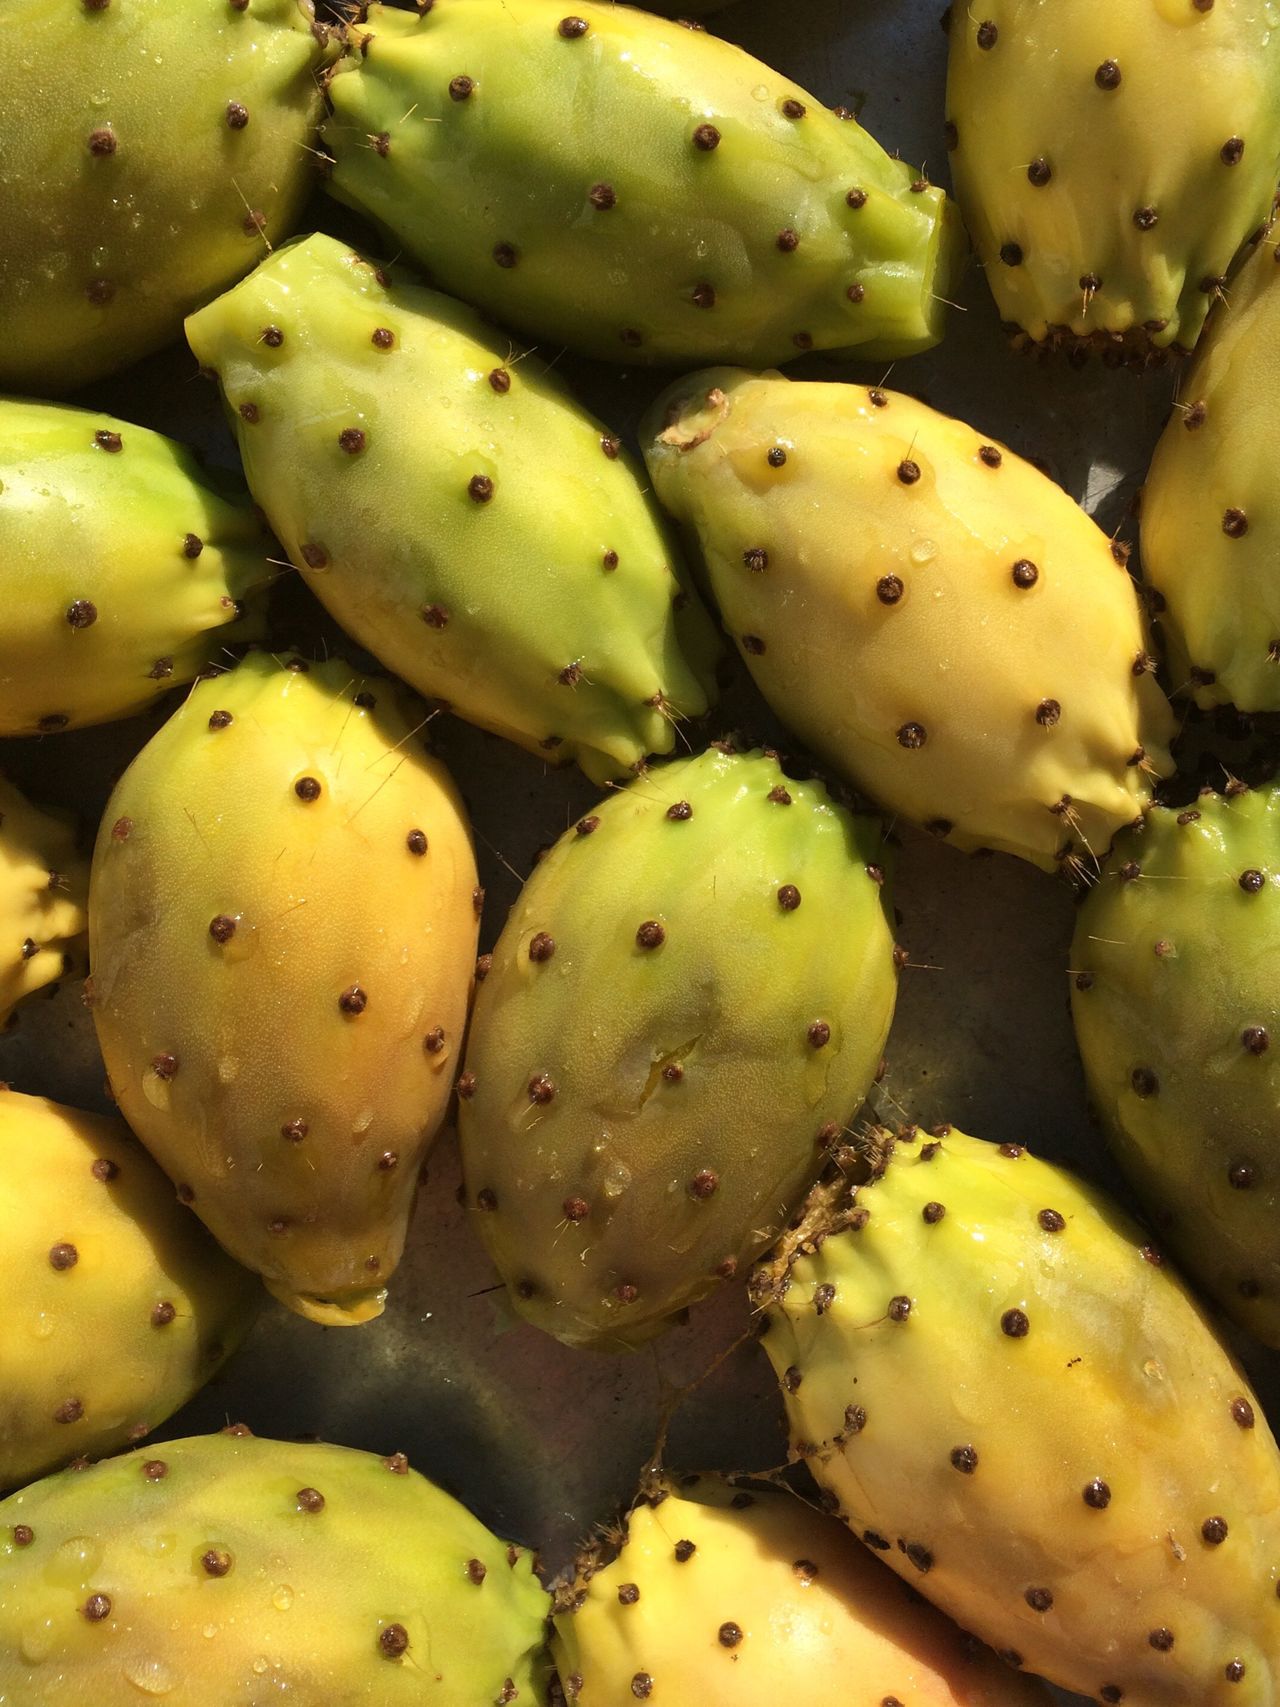 Cactusfruit